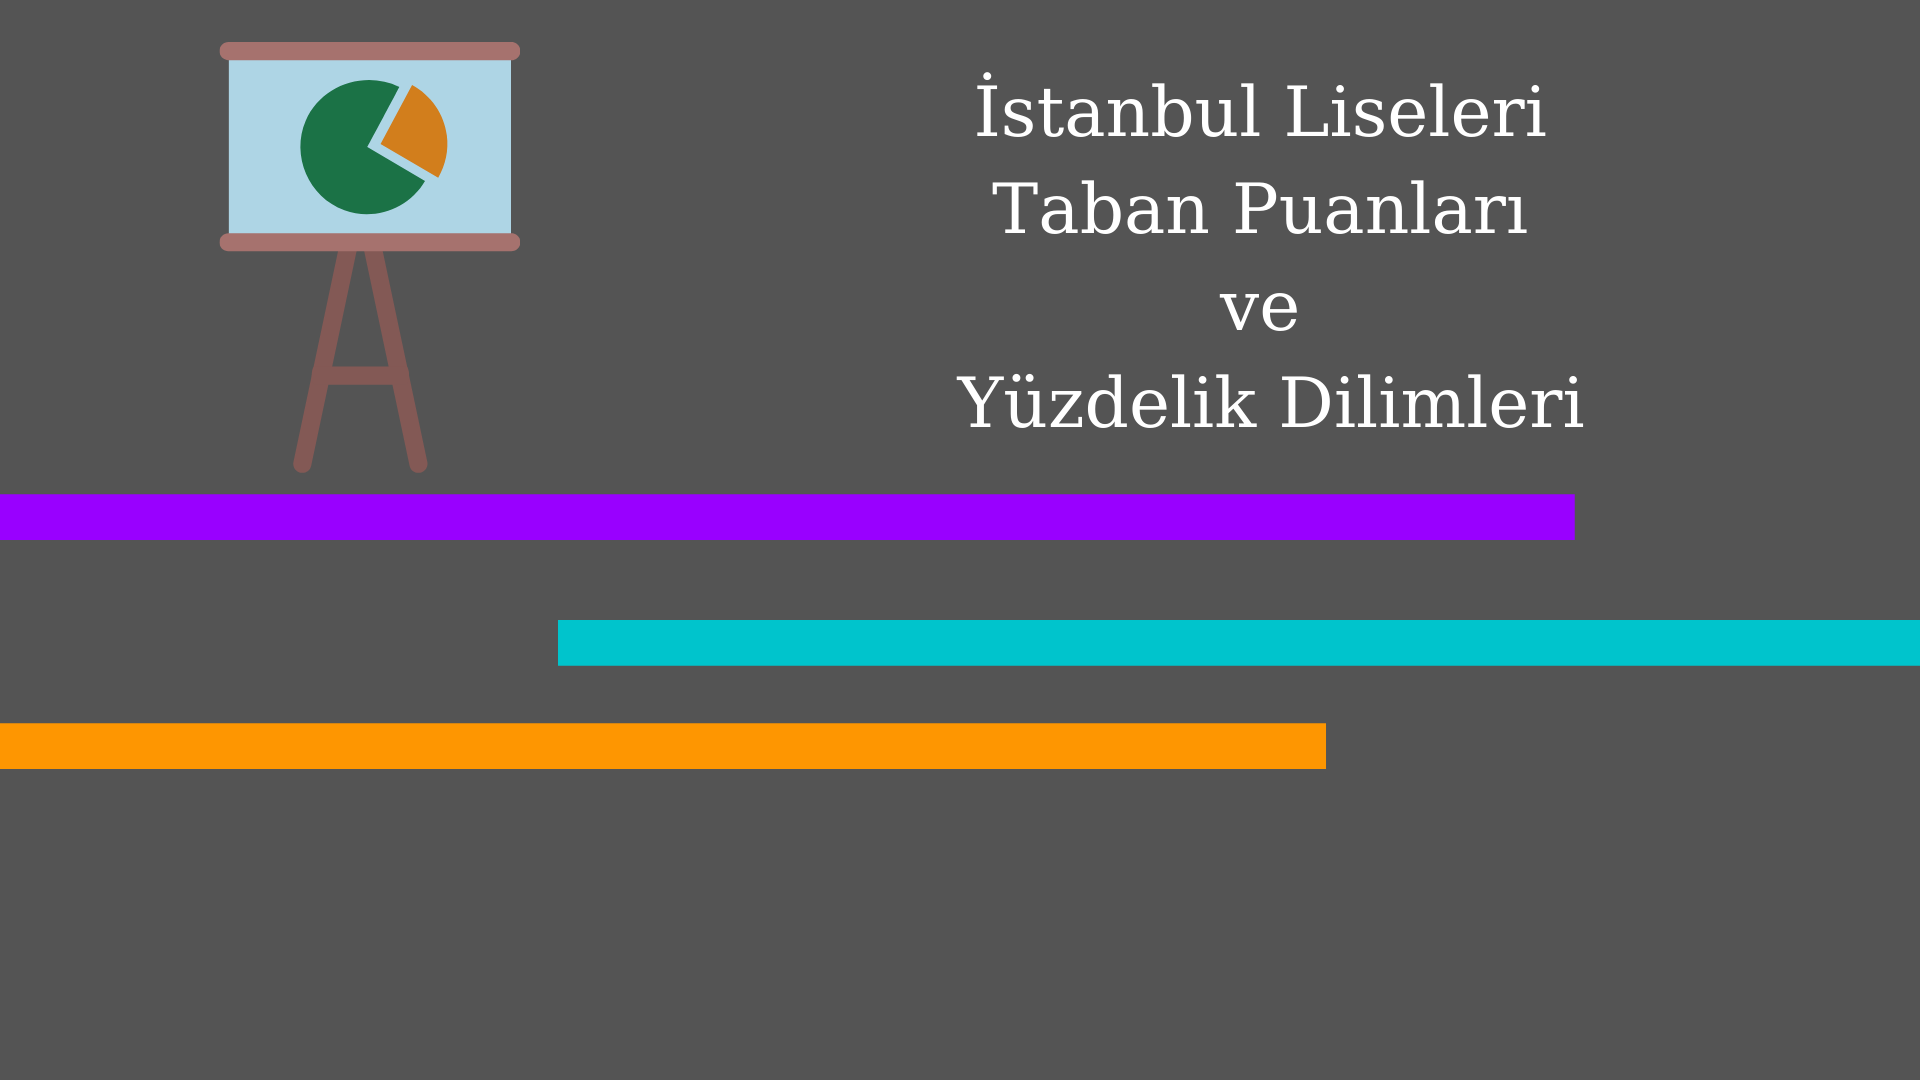 İstanbul Liseleri Taban Puanları ve Yüzdelik Dilimleri 2021